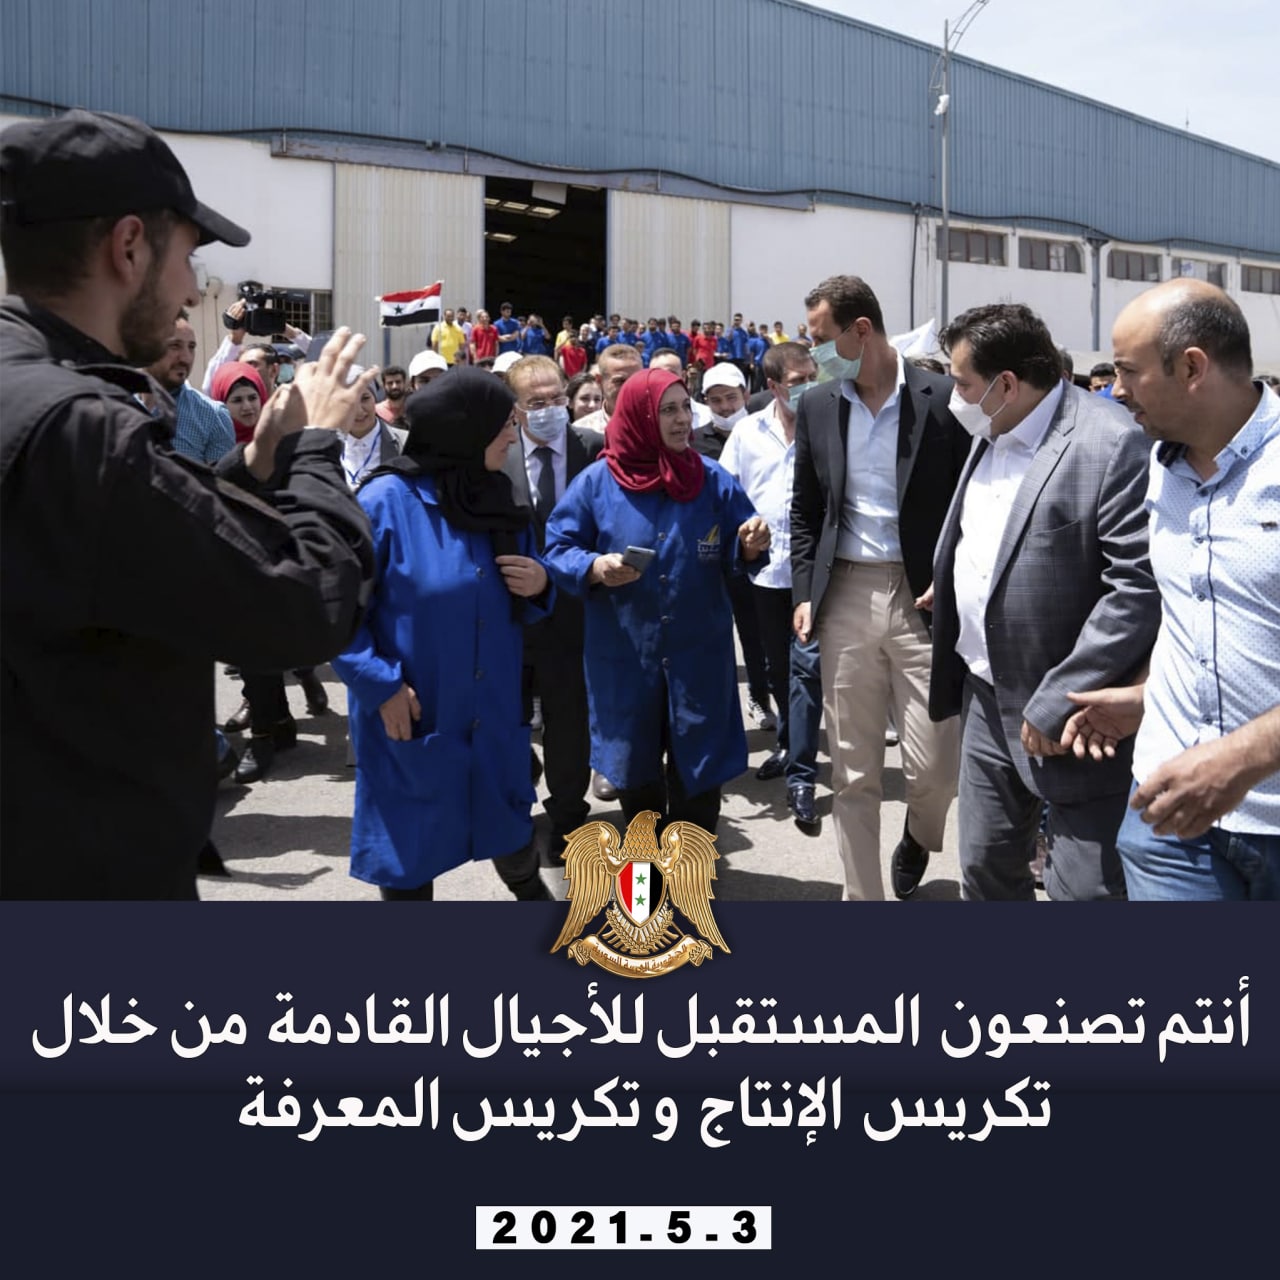 من زيارة الرئيس الأسد لعدد من المعامل والمنشآت في مدينة حسياء الصناعية